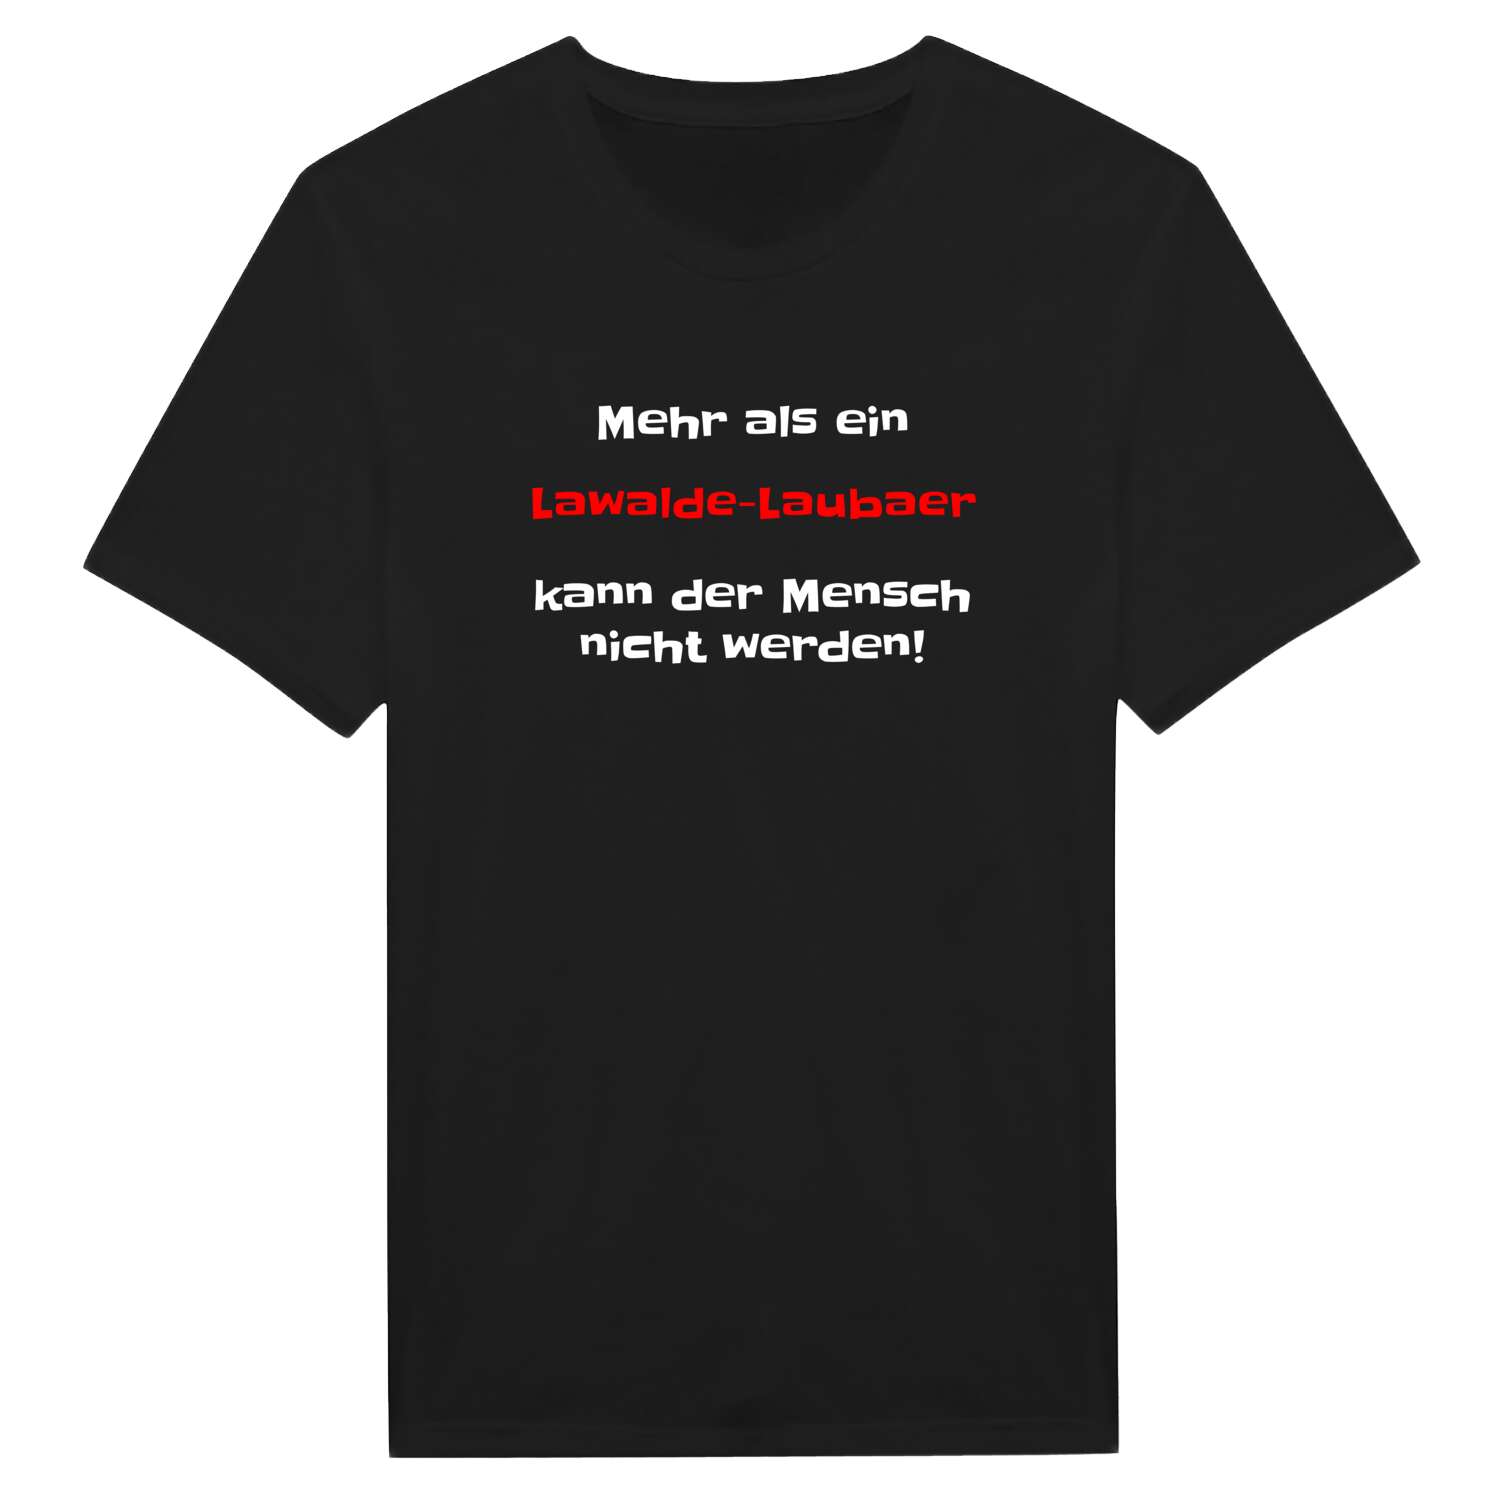 Lawalde-Lauba T-Shirt »Mehr als ein«